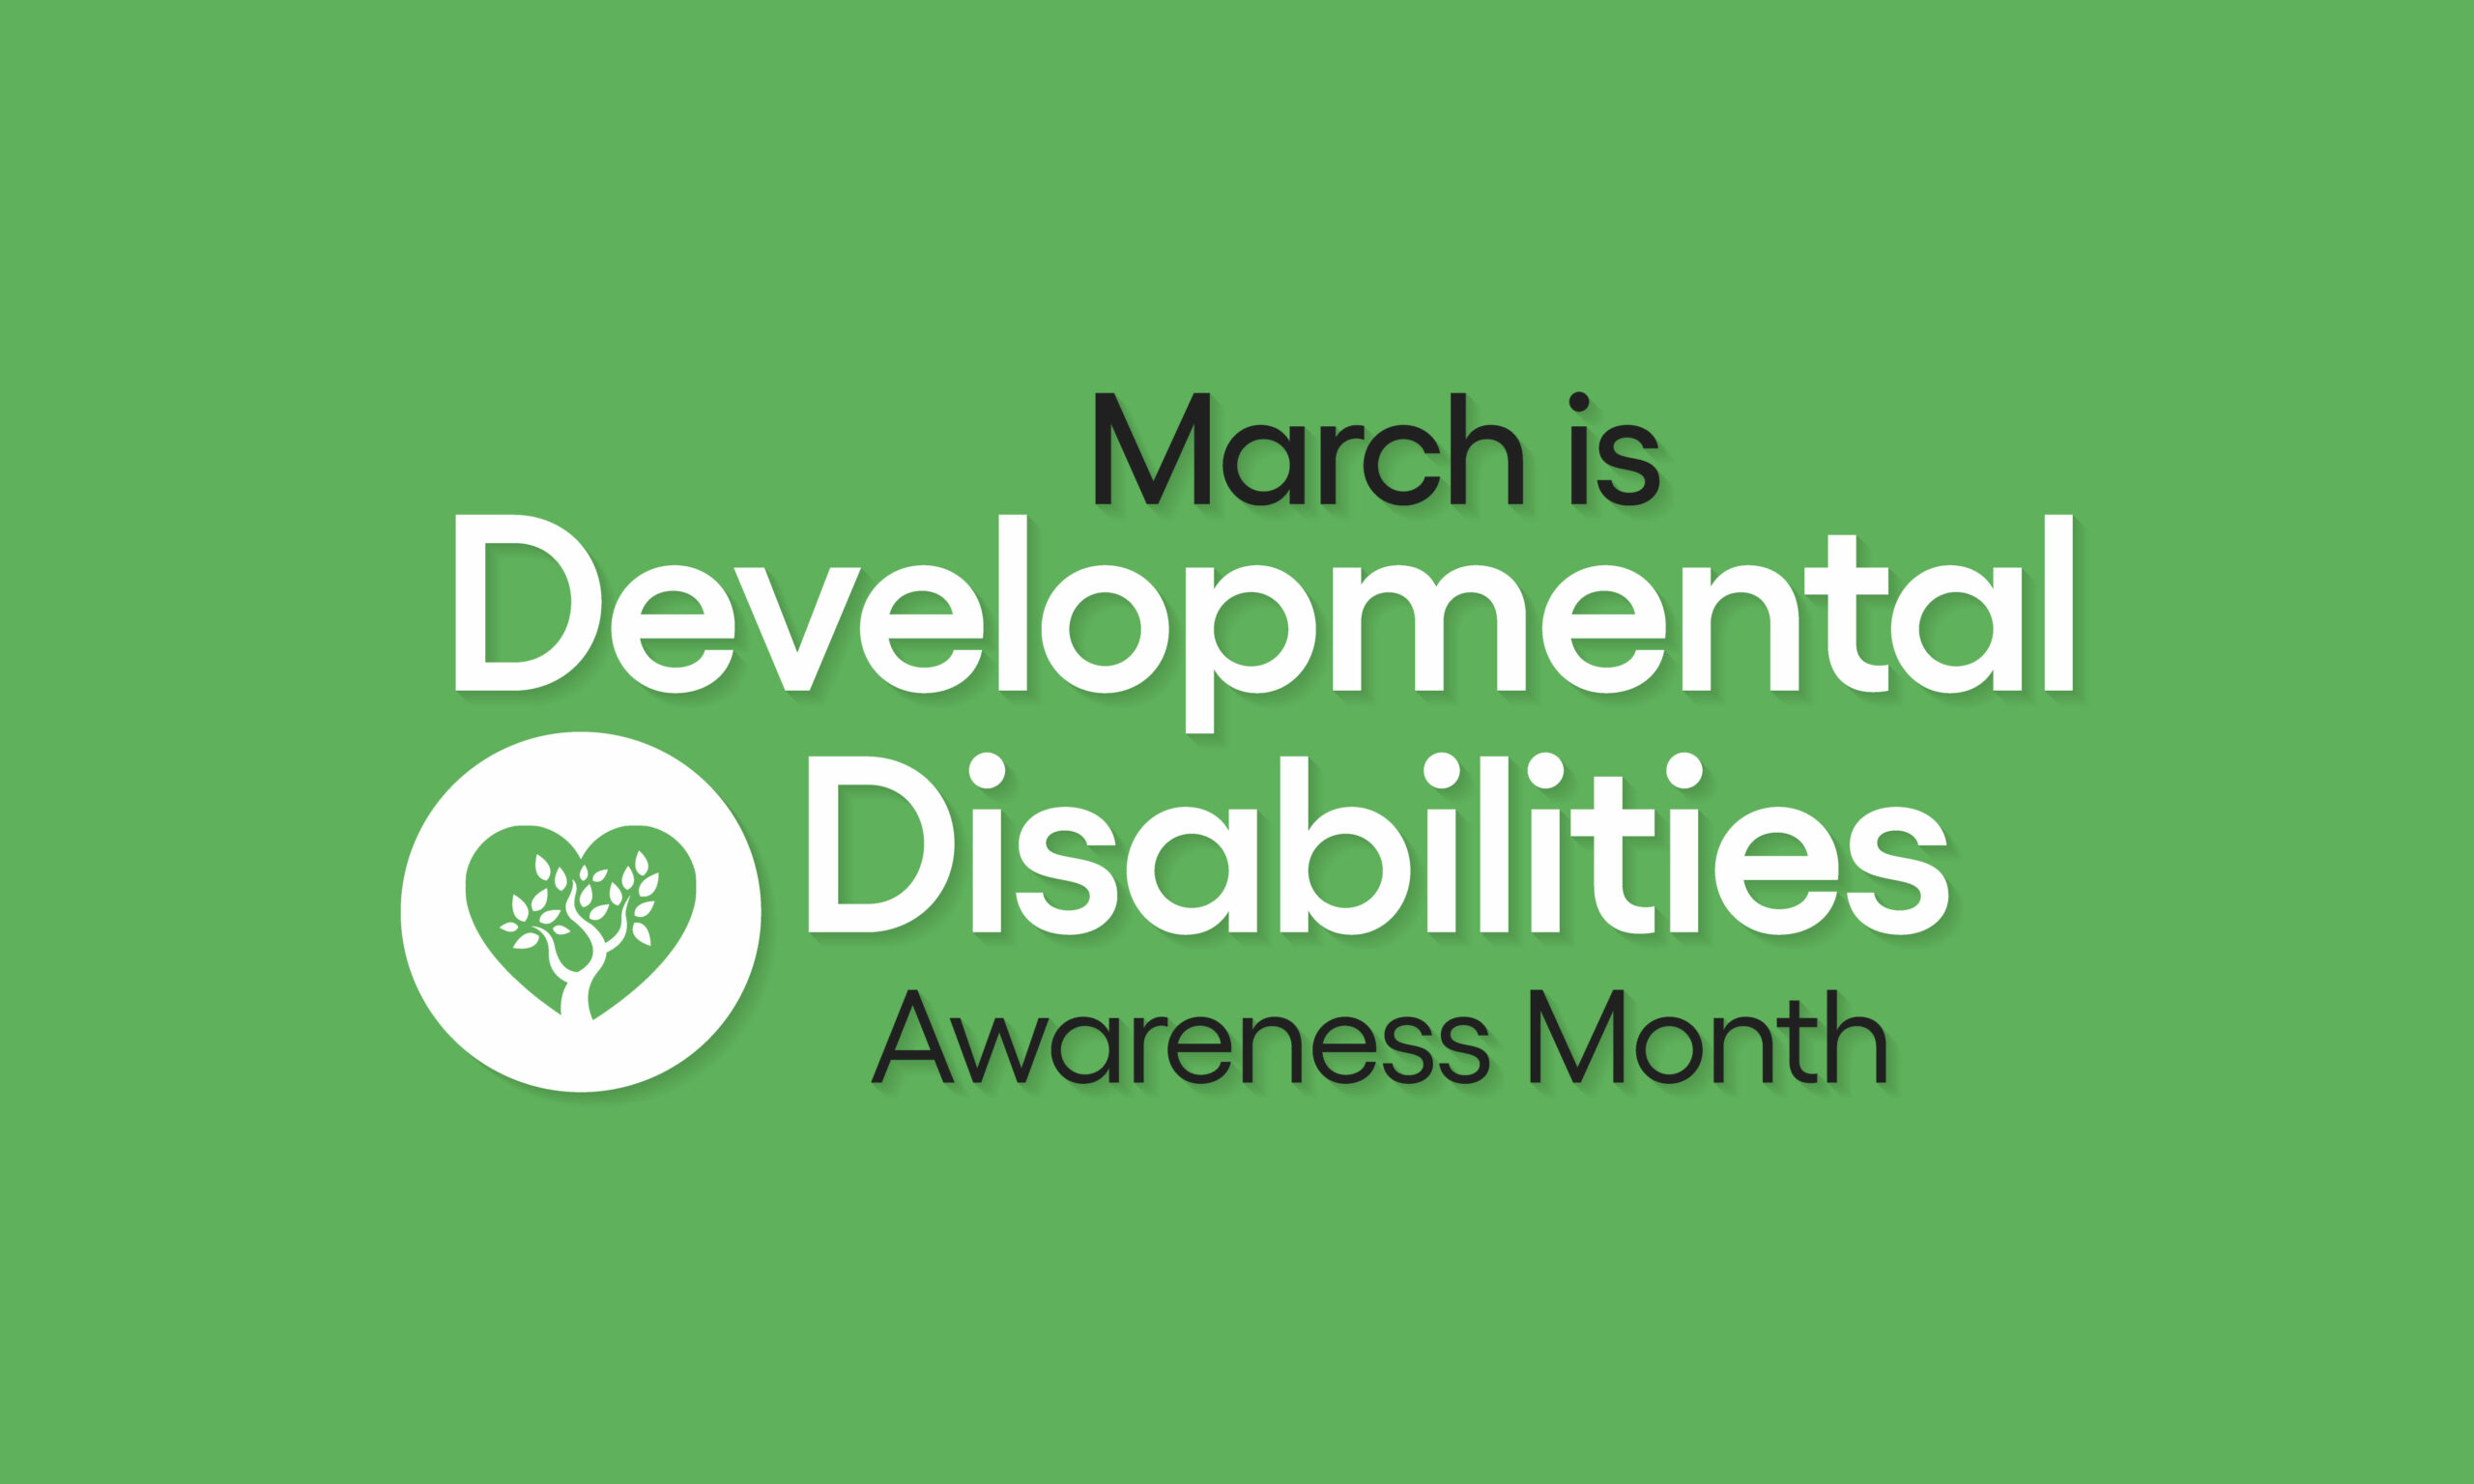 Developmental Disabilities Awareness Month